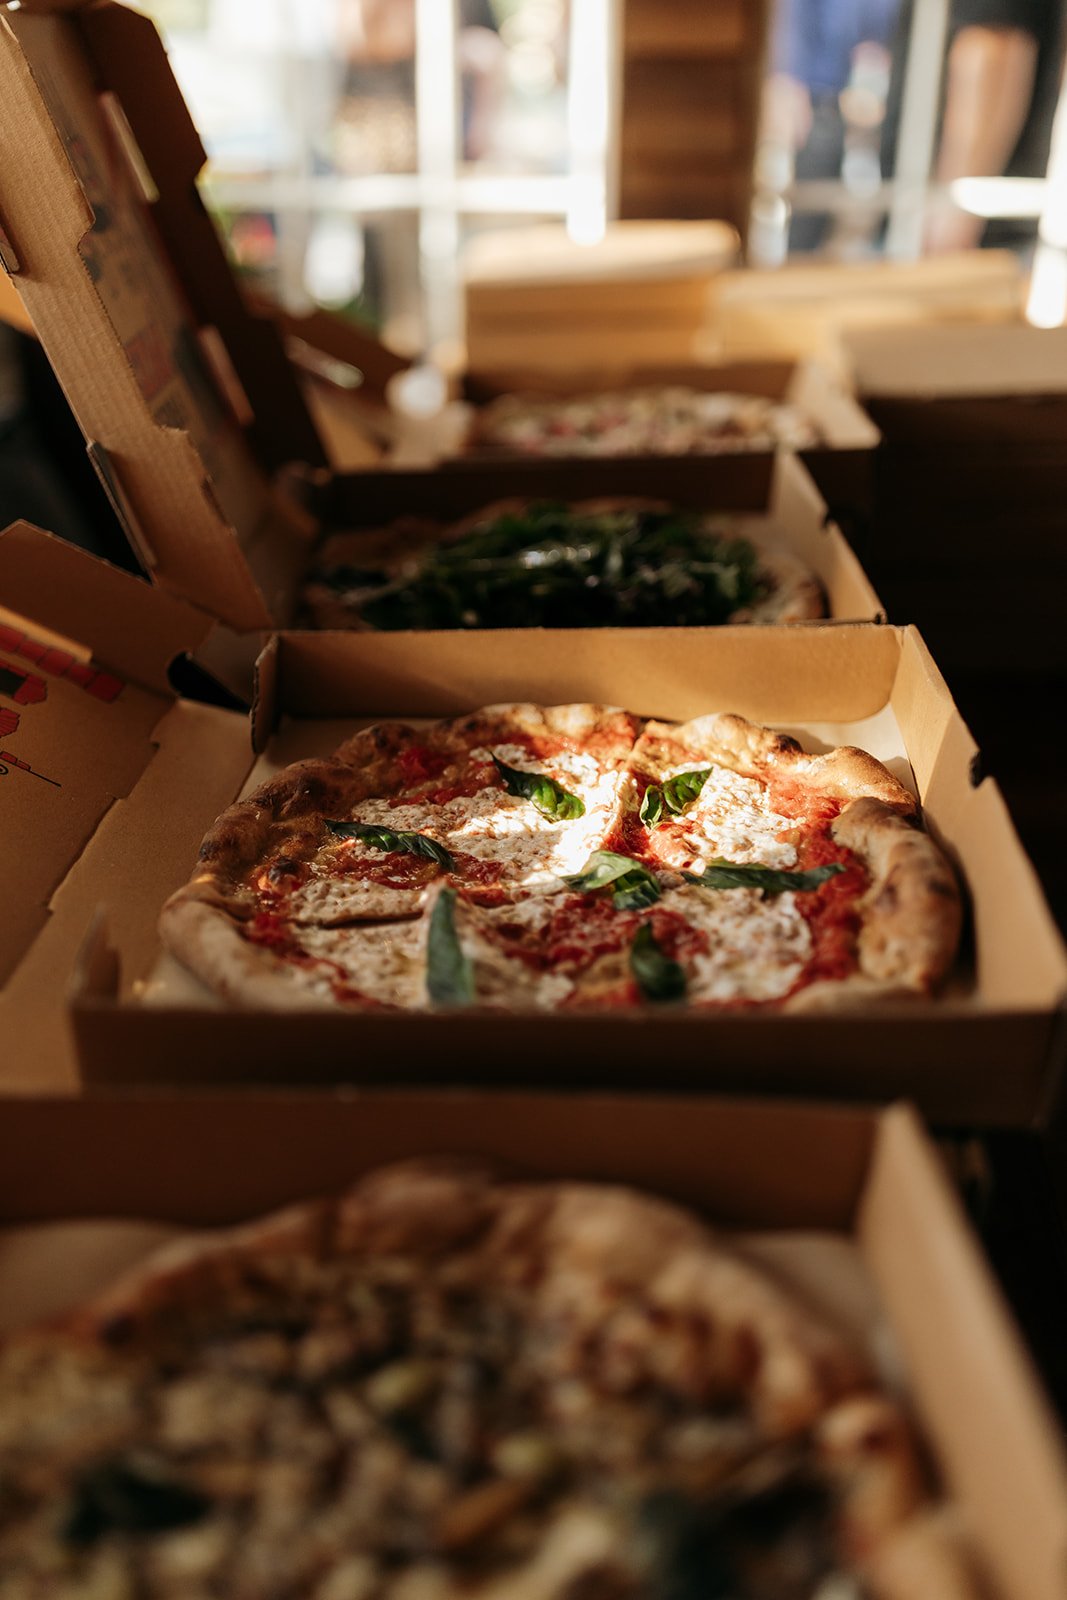 Prometheus Pizza in Fredericksburg catered their artisan pizzas